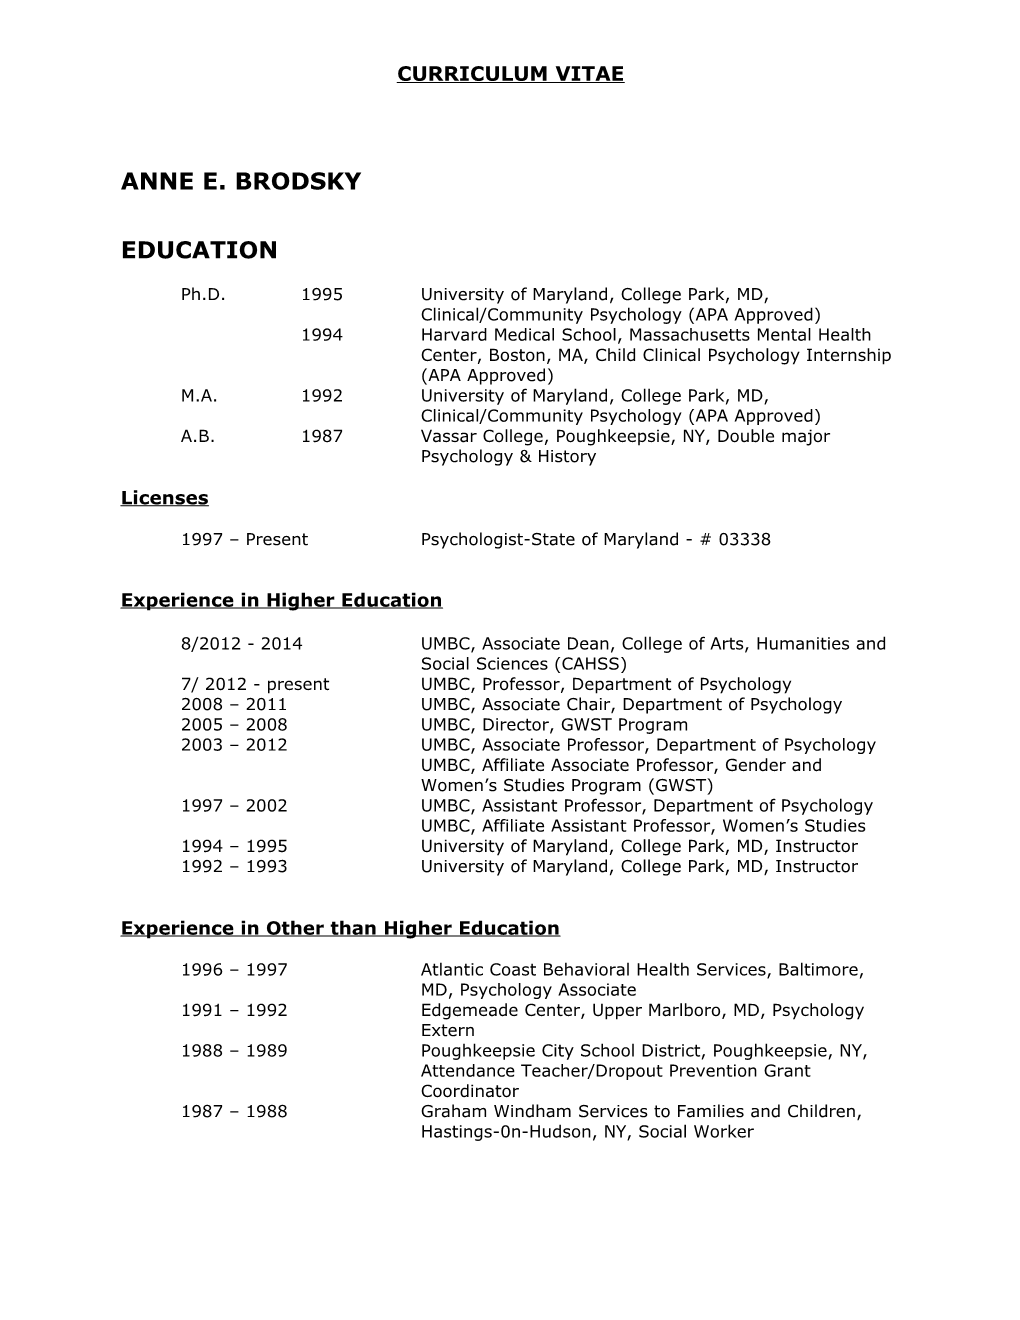 Anne E. Brodsky1 Curriculum Vitae